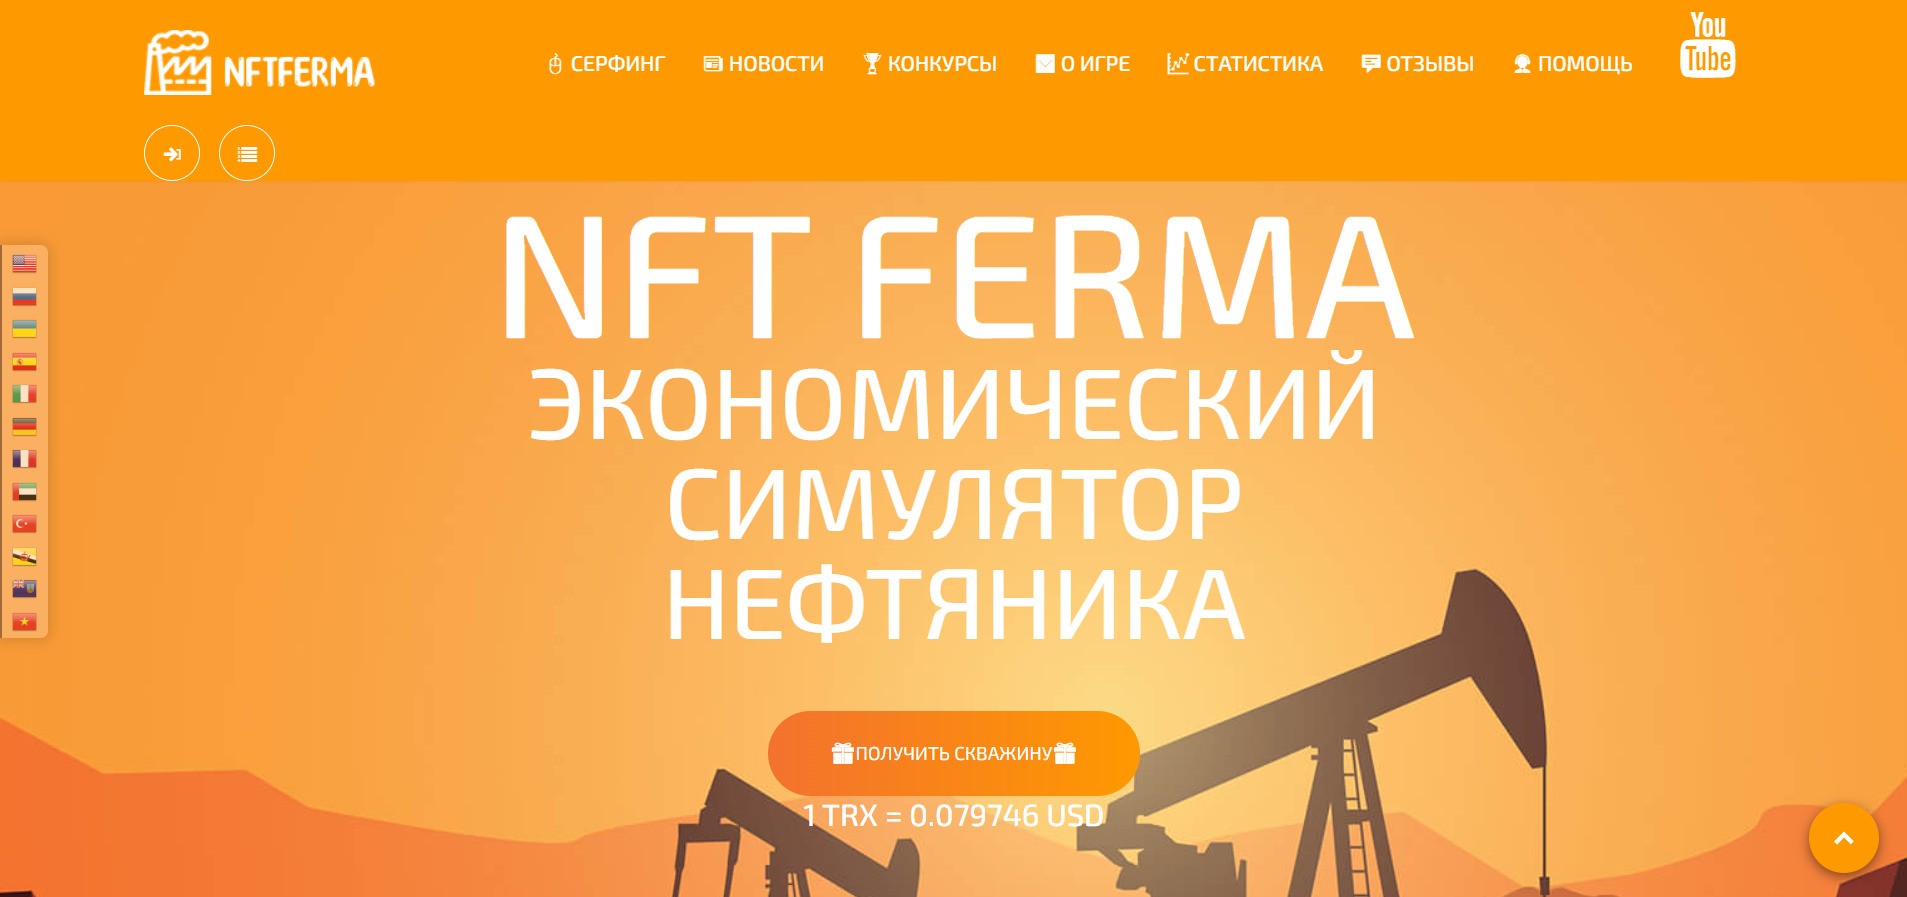 Сайт игры NFT ferma